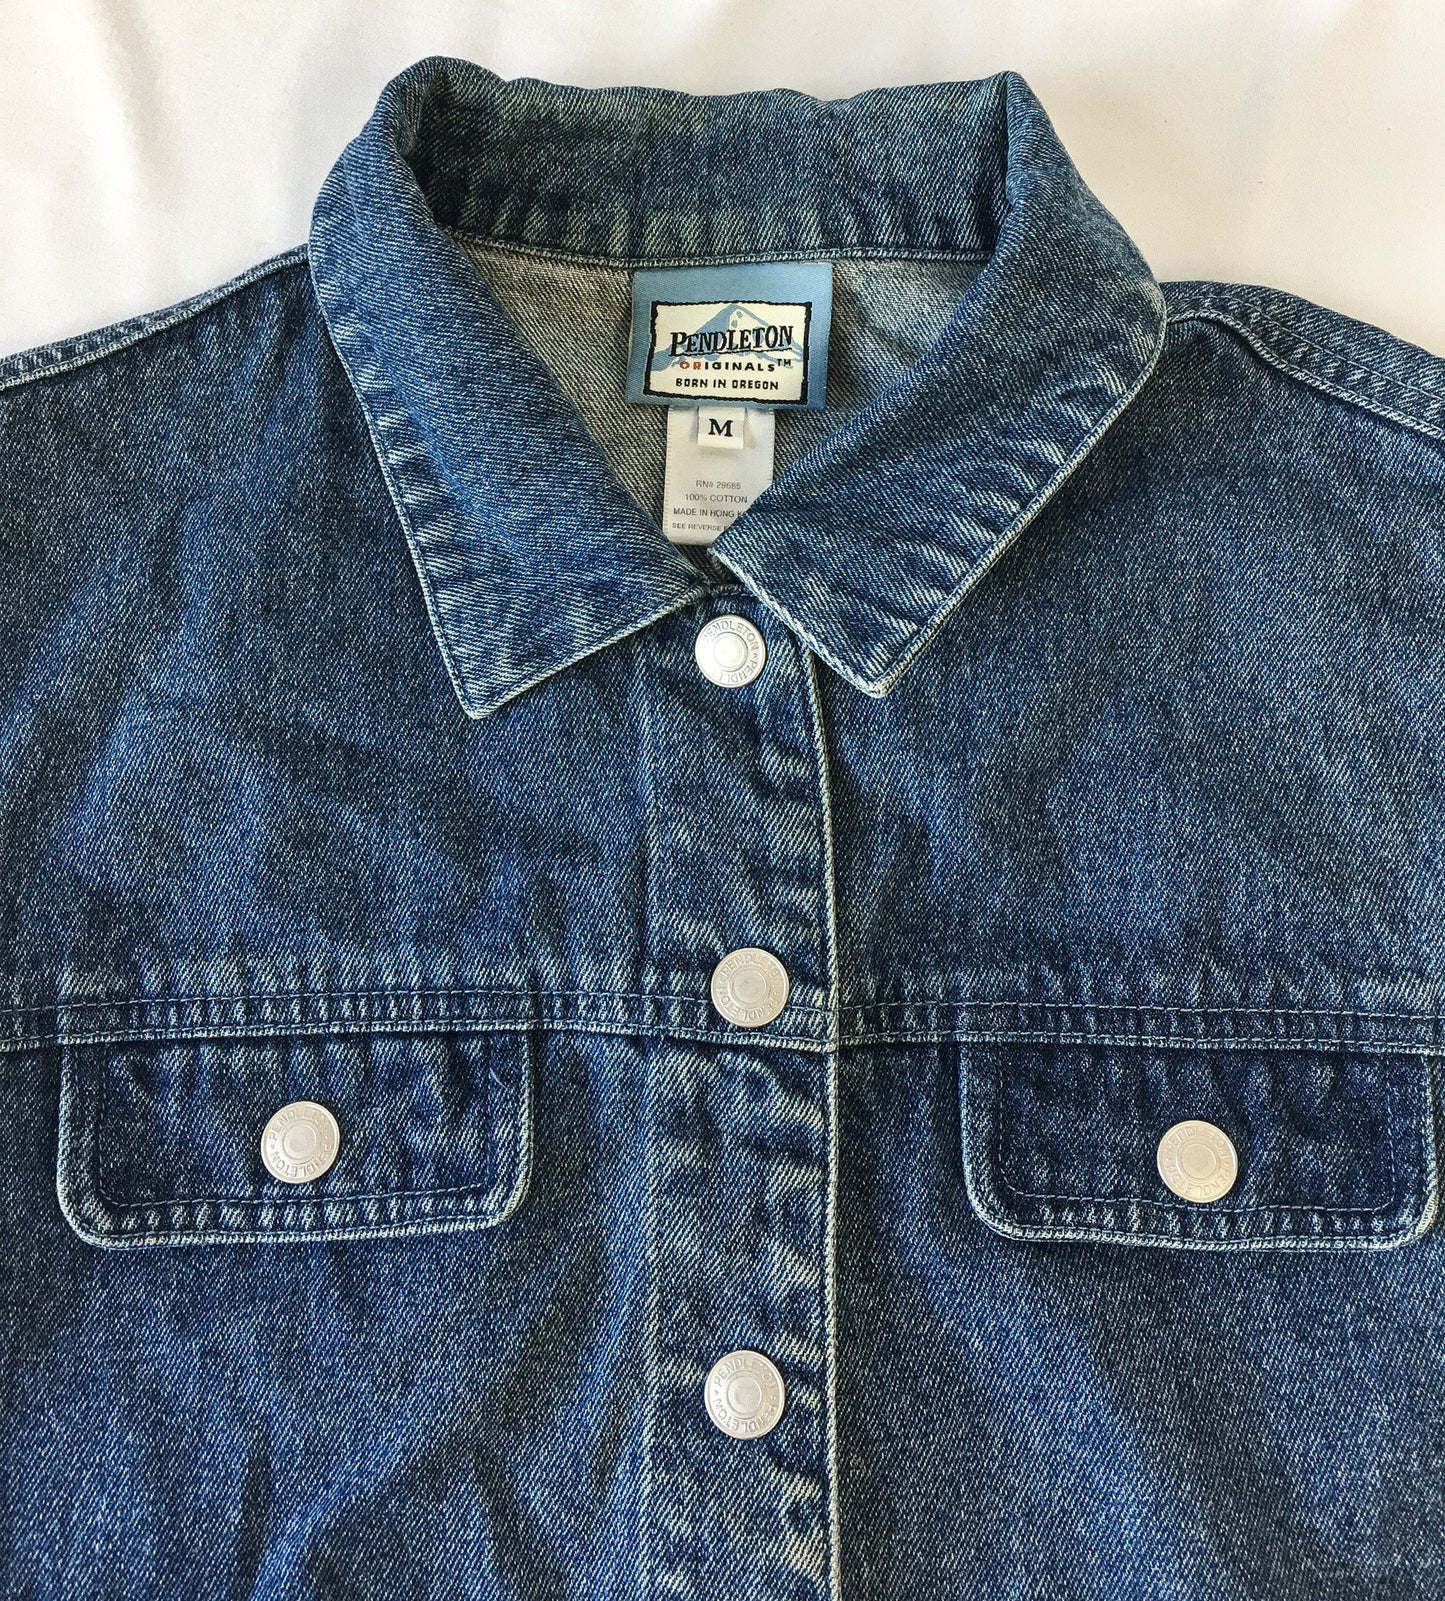 Vintage 90s Pendleton Medium Wash Denim Vest, Women's Sz. M, 90s Jean Jacket Vest